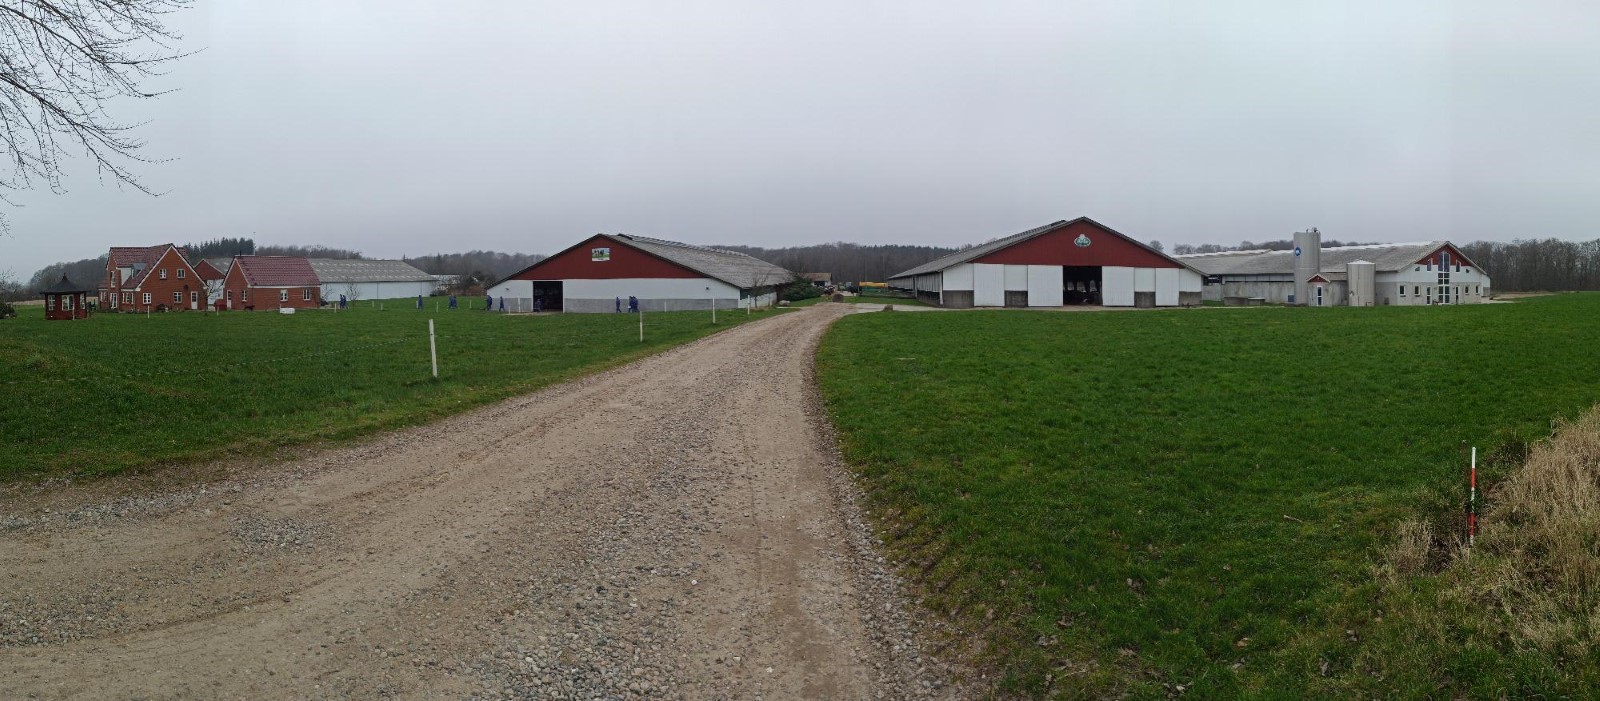 La granja Fam Kühne IS DK-41 con 575 vacas adultas, 11.500 kilos de leche corregida y 742 hectáreas 